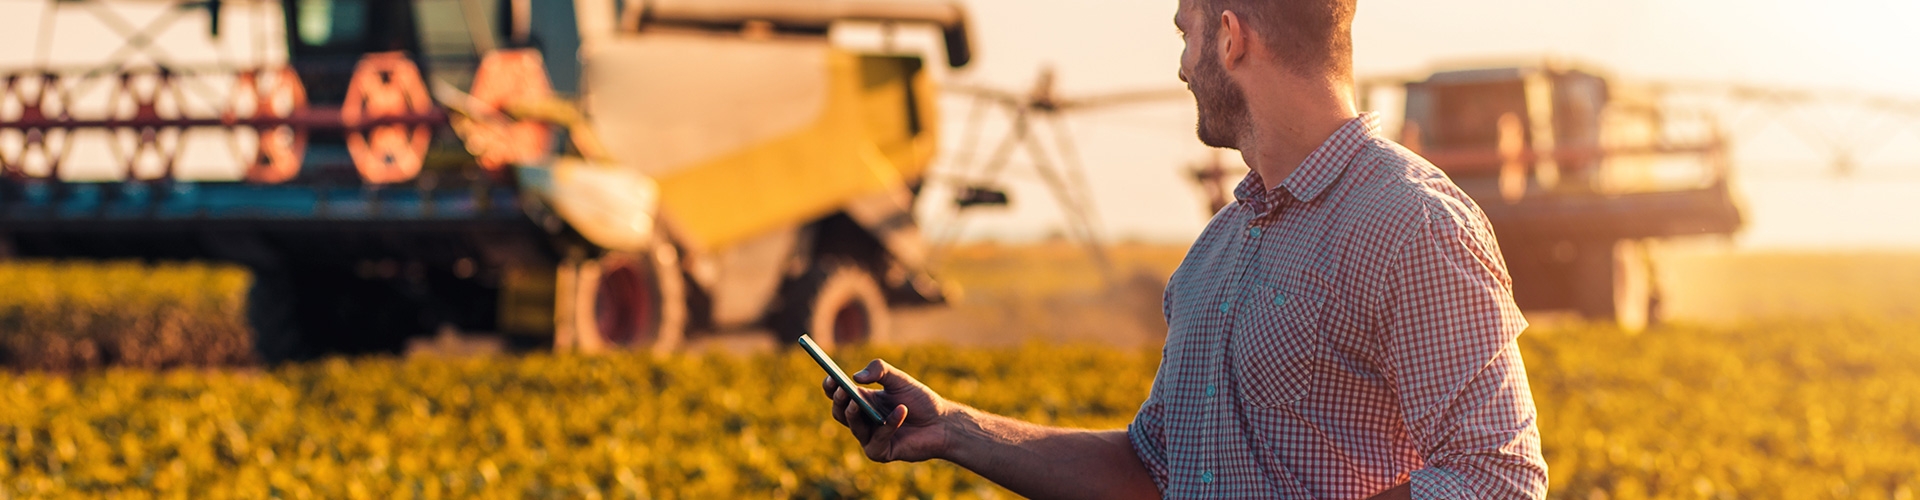 Hombre con camisa de cuadros con dispositivo móvil en la mano controlando en tiempo real sus cultivos, mirando una máquina que cosecha los cultivos.